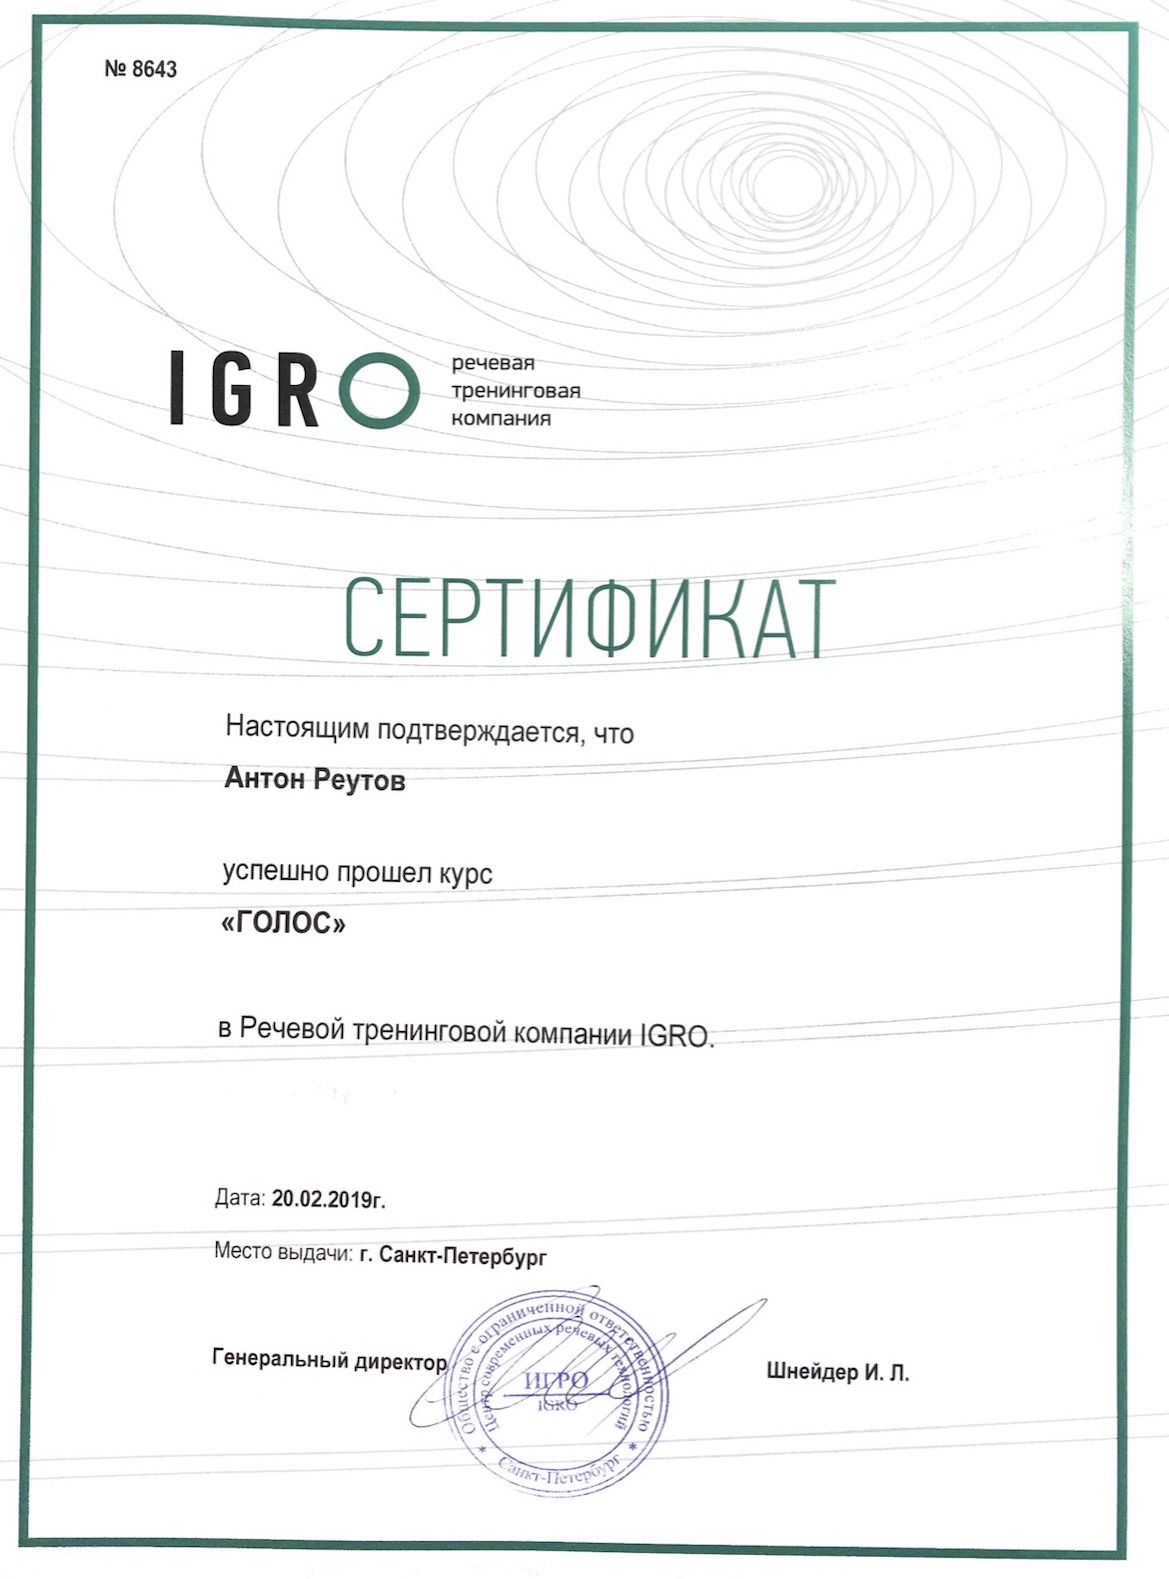 Сертификат IGRO